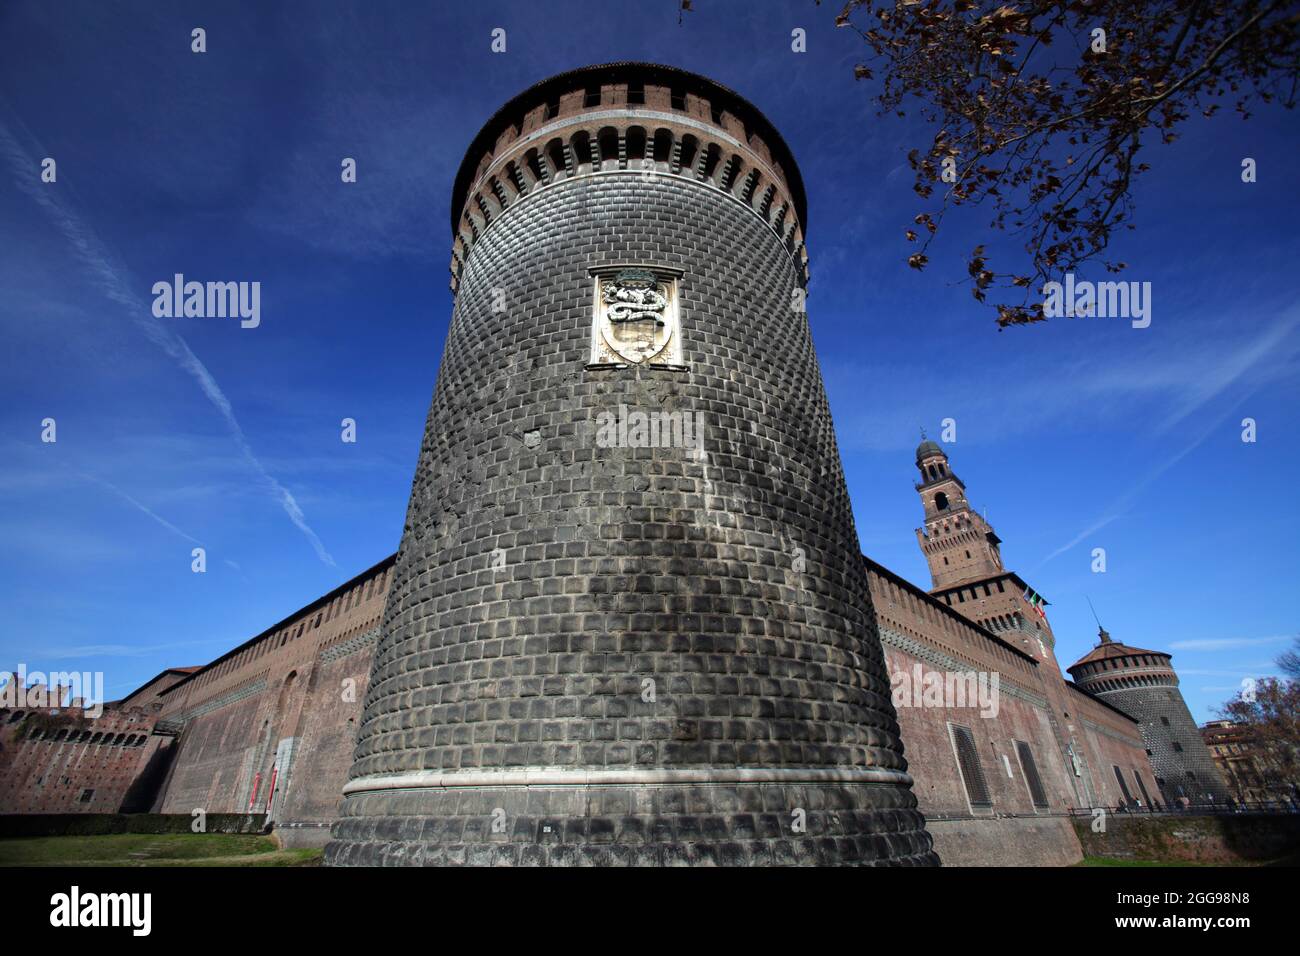 The Sforza Castle (Castello Sforzesco), Milan, Italy Stock Photo